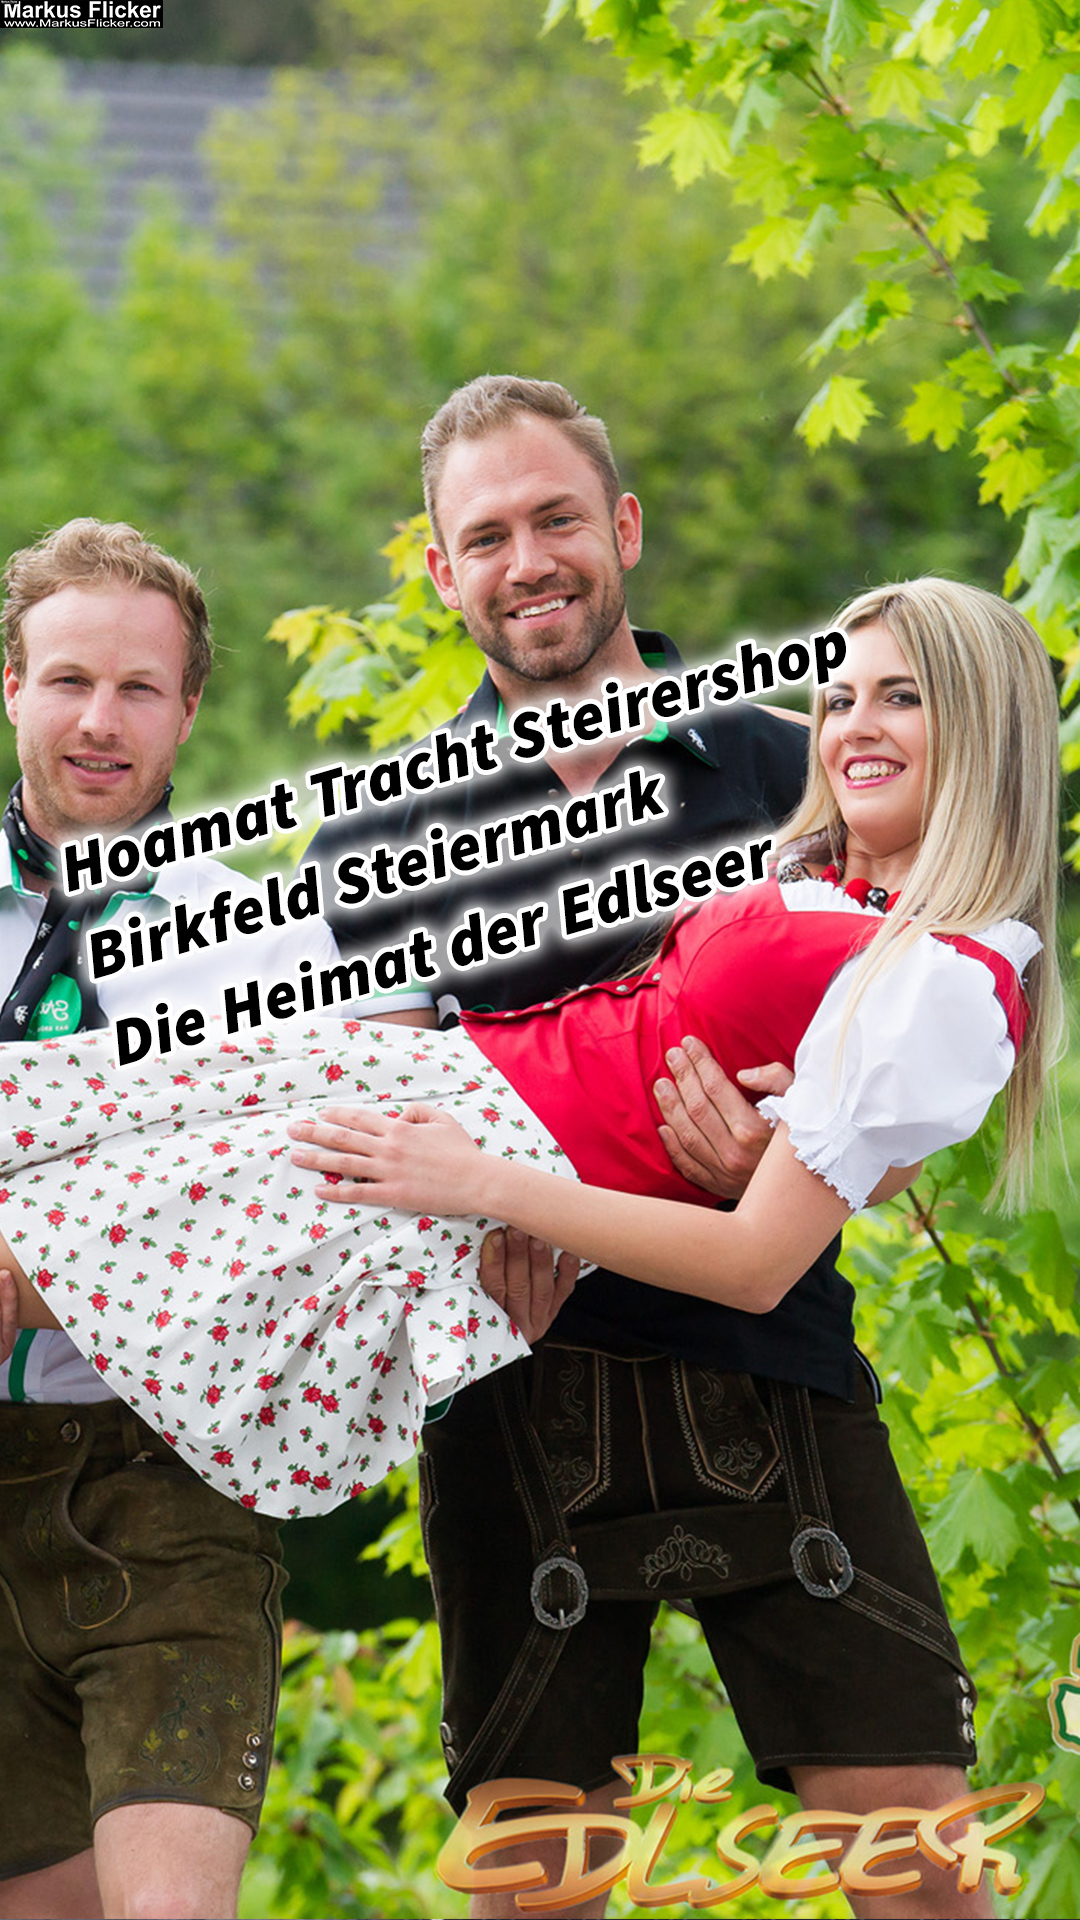 Hoamat Tracht Steirershop Birkfeld Steiermark Die Heimat der Edlseer